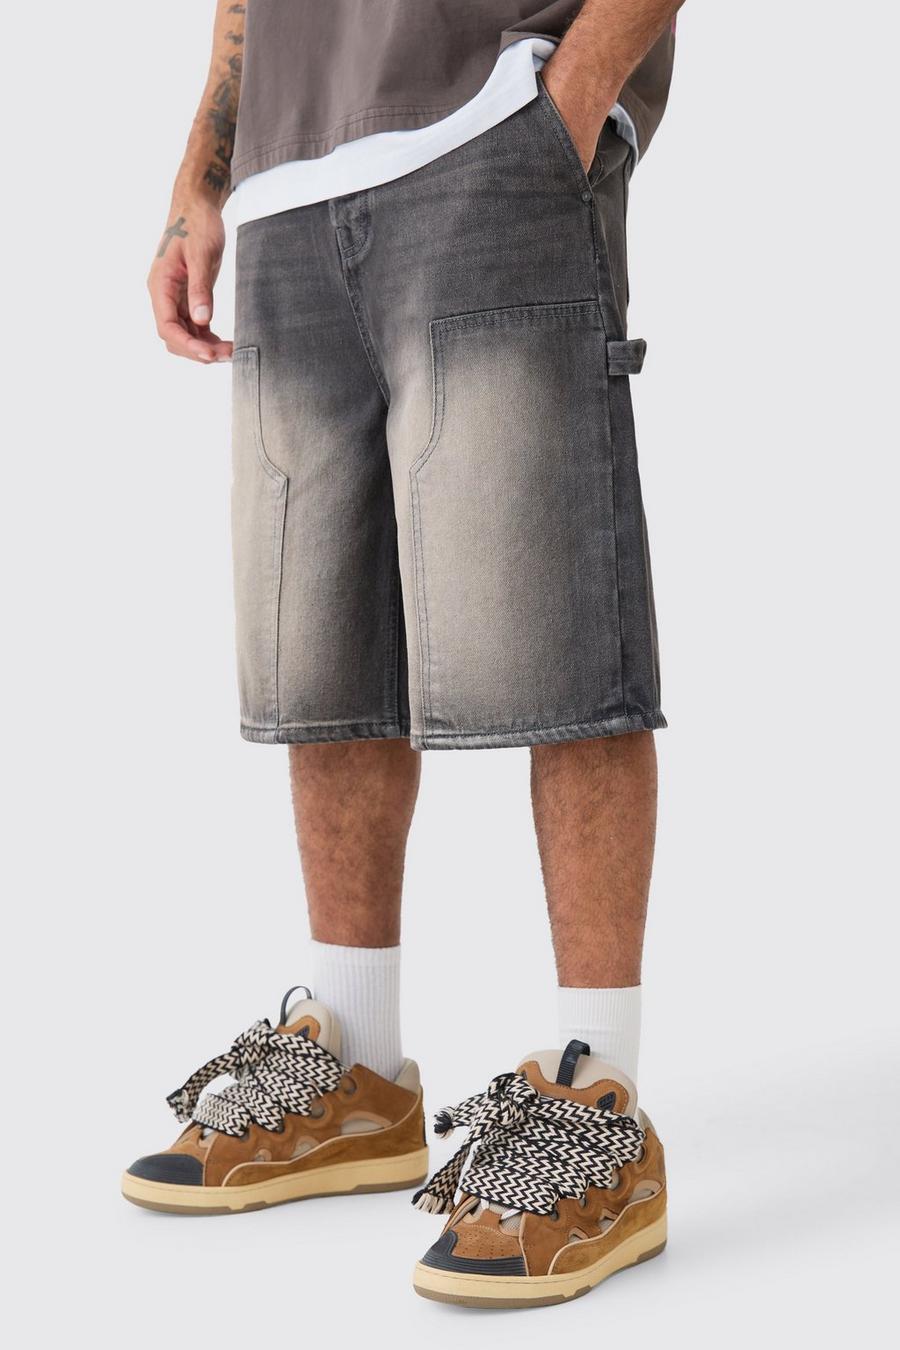 Pantaloni tuta in denim grigio antico con dettagli stile Carpenter, Grey